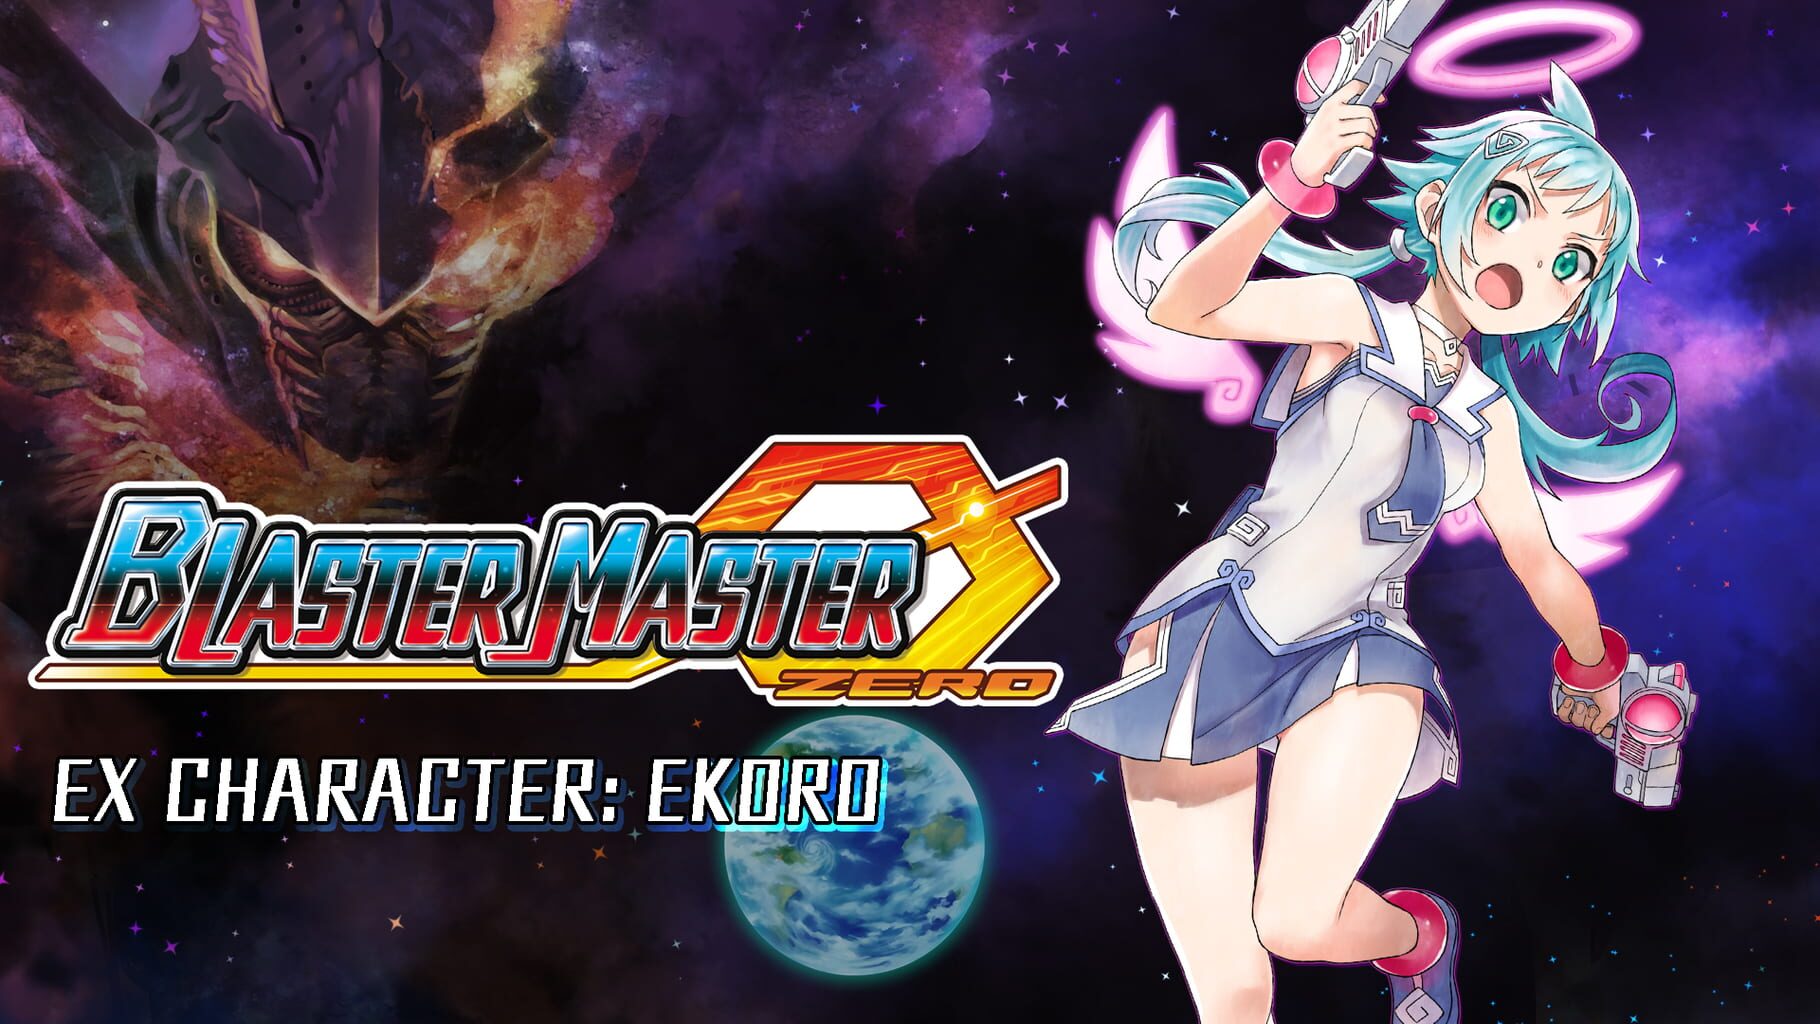 Blaster Master Zero: Ex Character - Ekoro artwork